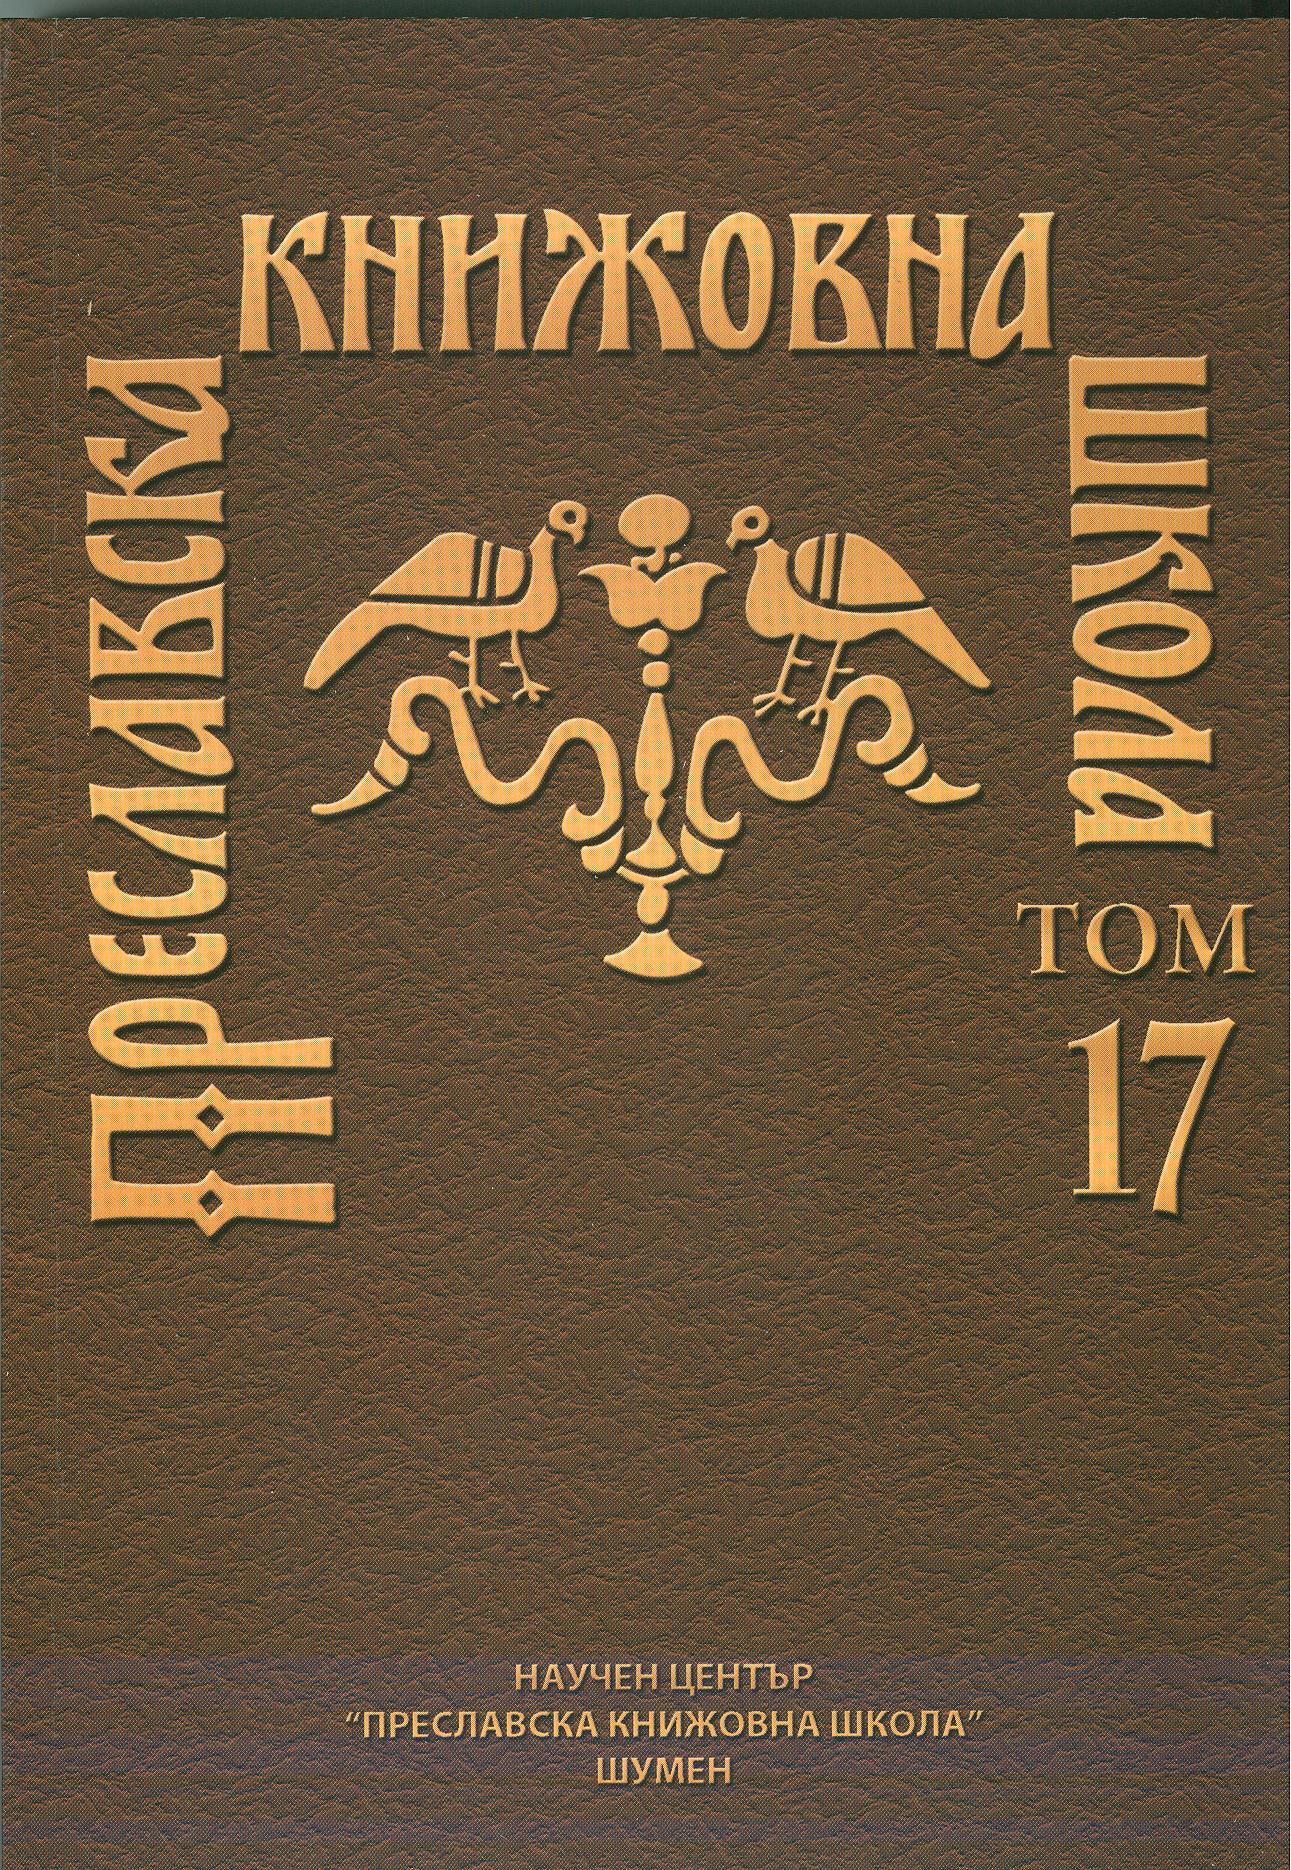 RARE LEXEMES IN THE OLD-BULGARIAN LITERARY LANGUAGE (съцѣглъ, цѣглъ, цѣгьхъ) Cover Image